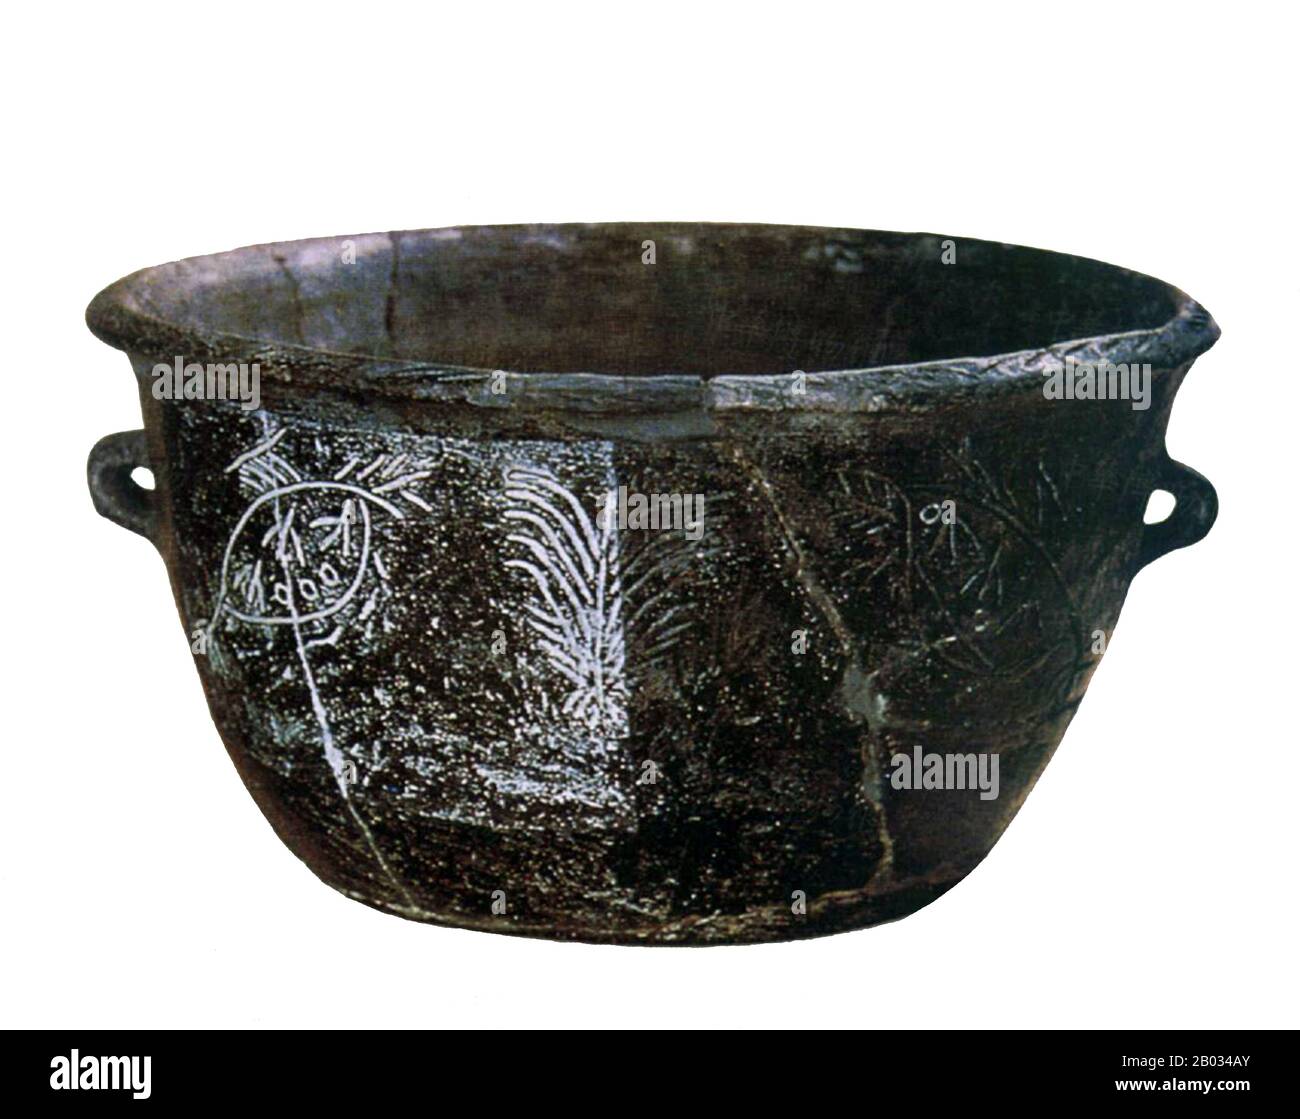 La cultura di Hemudu (da 5500 a 3300 a.C.) fu una cultura neolitica che fiorì appena a sud della baia di Hangzhou a Jiangnan, nella moderna provincia di Yuyao, Zhejiang. La coltura può essere divisa in fasi precoci e tardive, rispettivamente prima e dopo 4000 BCE. La gente di Hemudu ha vissuto in case lunghe e palafitte. Le case comuni erano comuni anche negli insediamenti di Hemudu. L'Hemudu era una delle prime culture a coltivare il riso. Gli studiosi ritengono che la cultura emudu sia una fonte di molte culture proto-austronesiane. Foto Stock